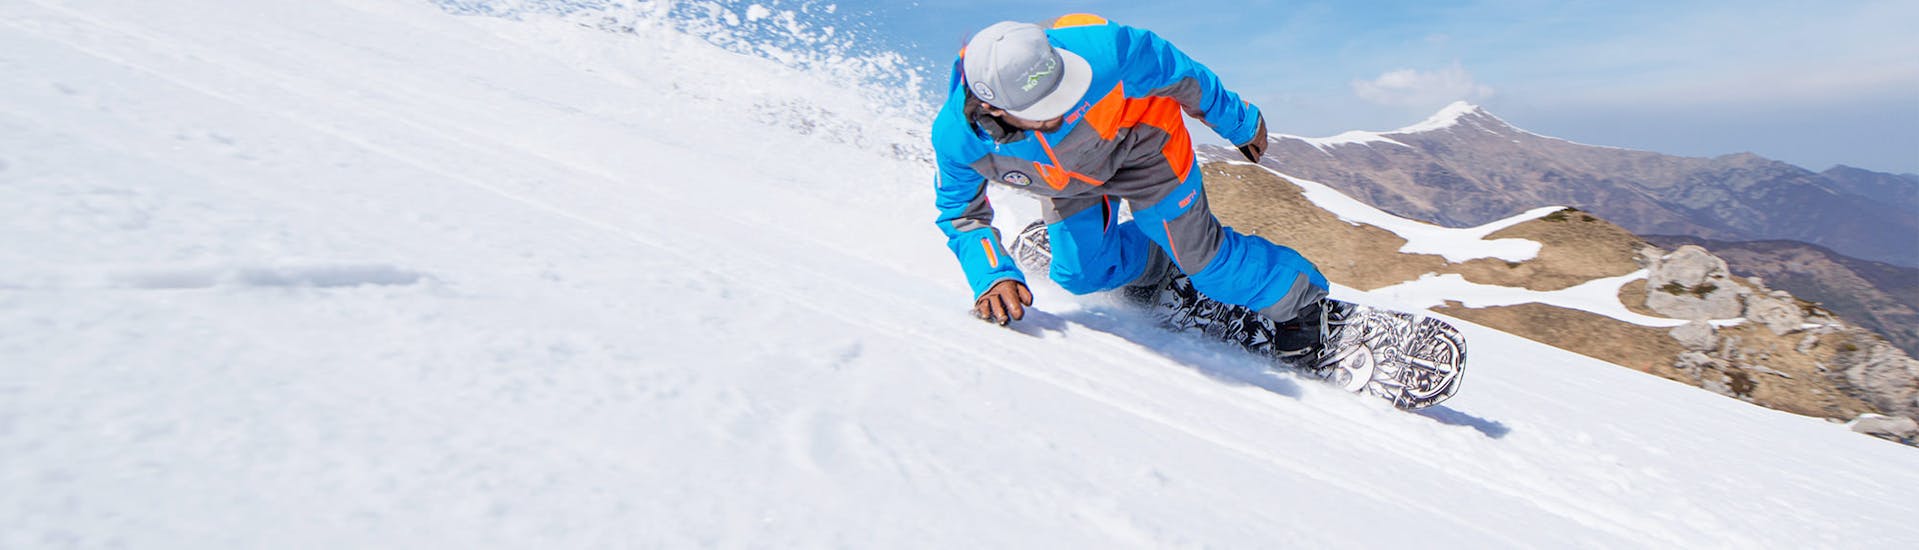 Le moniteur de snowboard avec les magnifiques montagnes de Limone en arrière-plan avant l'un des cours particuliers de snowboard pour enfants et adultes de tous niveaux.